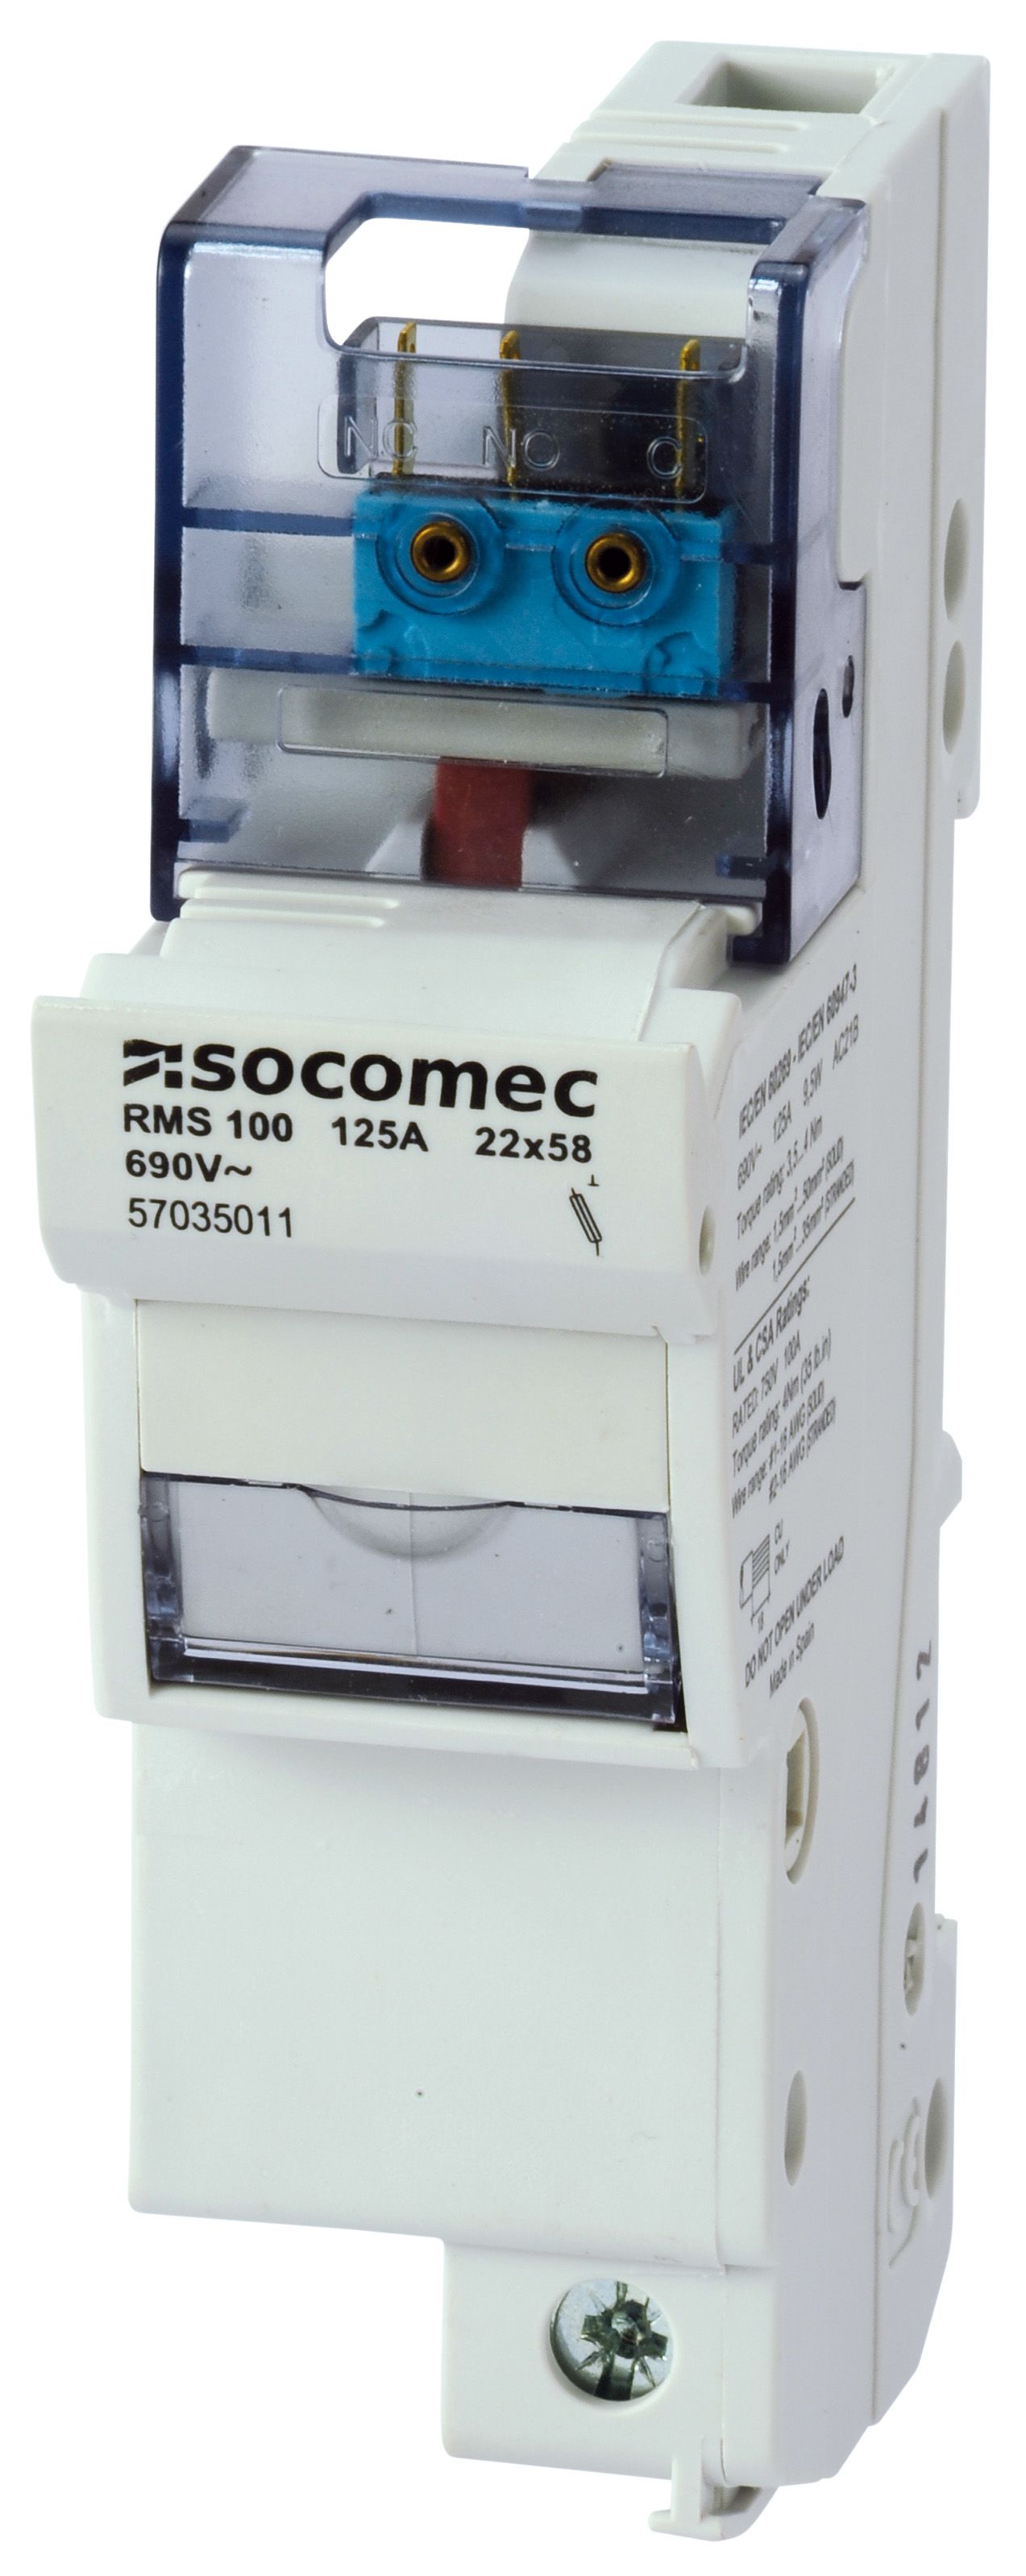 Socomec 125A Rail Mount Fuse Holder for 22 x 58mm Fuse, 3P+N, 690V